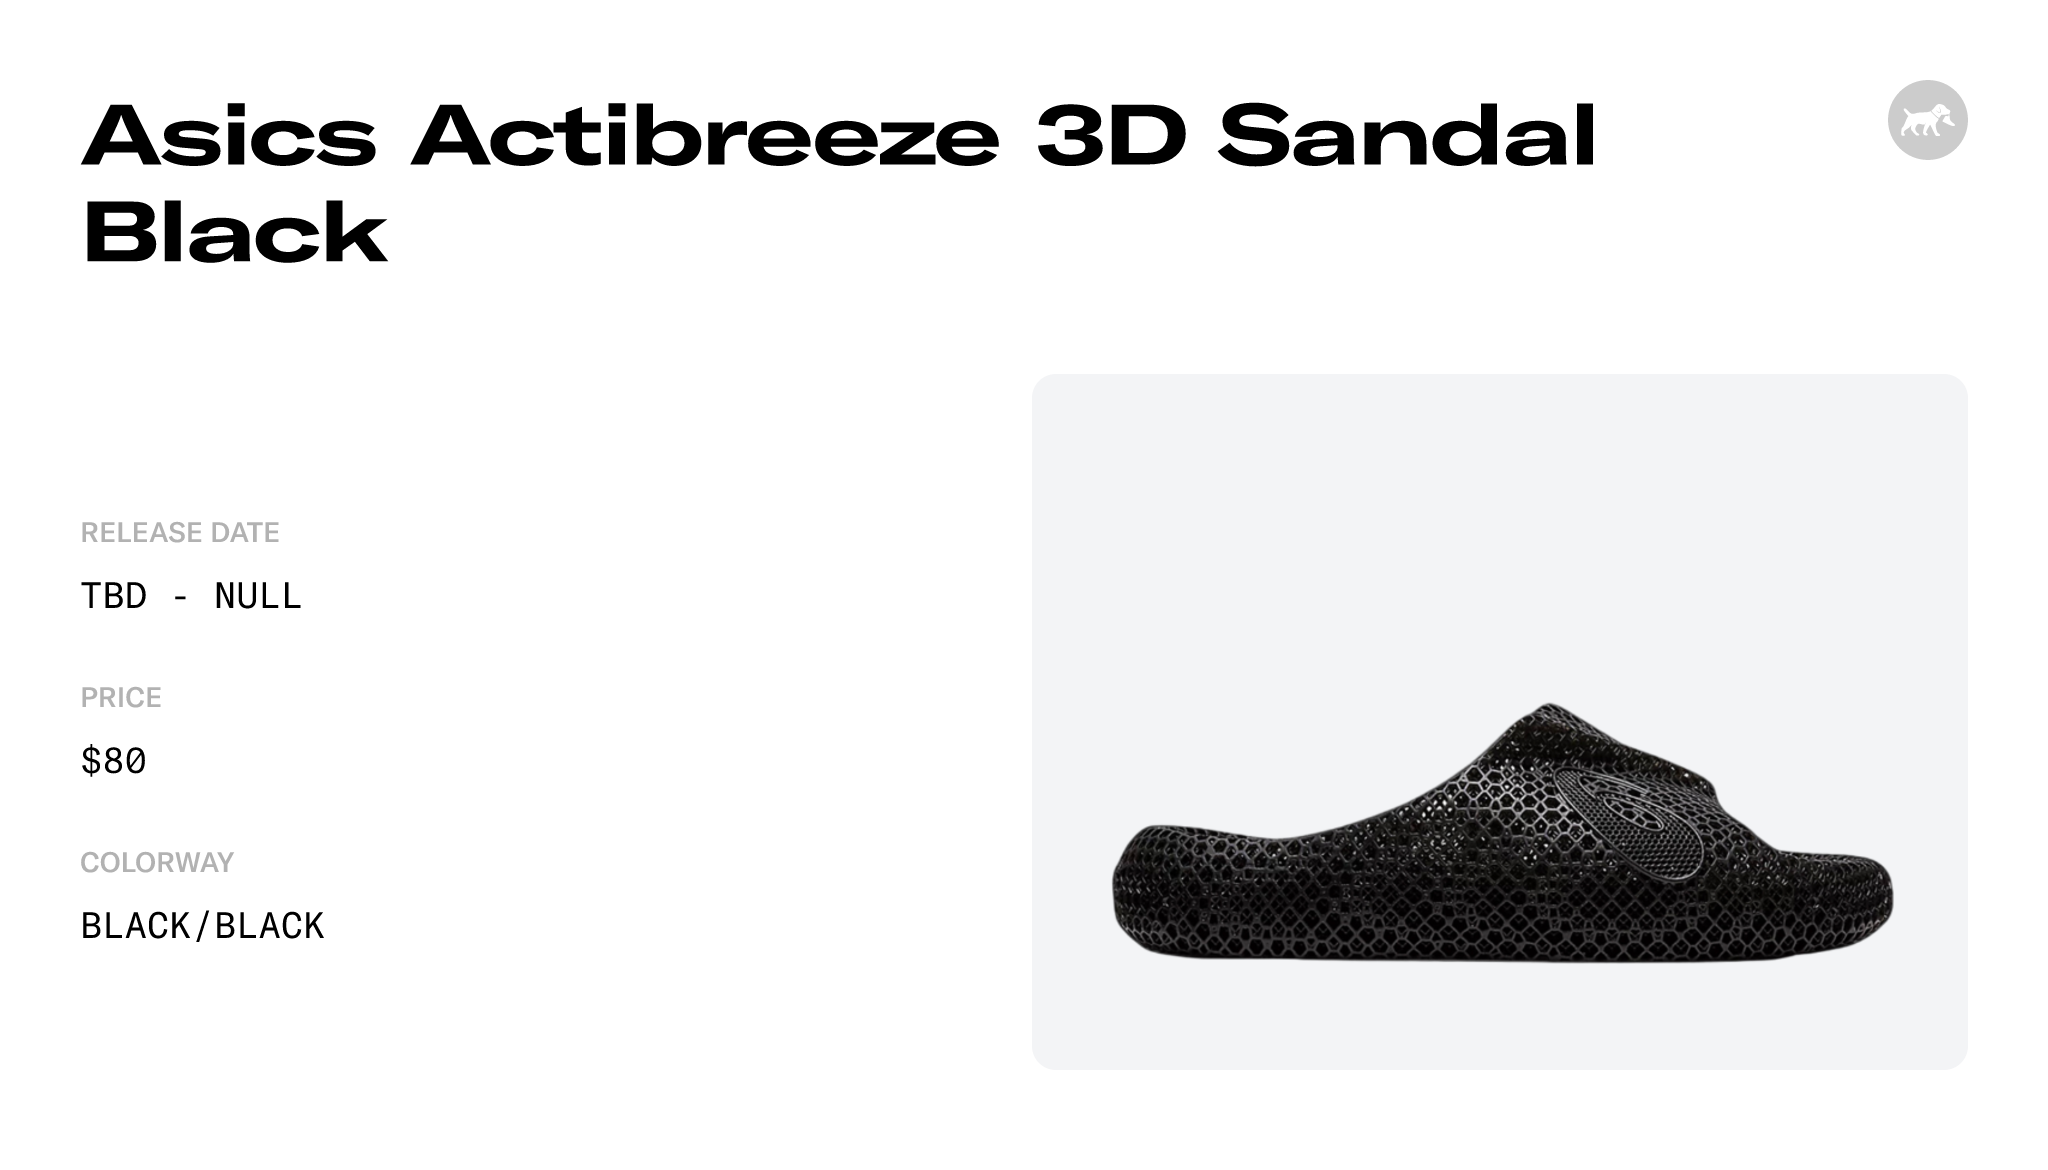 Asics Actibreeze 3D Sandal Black - 1013A122-001 Raffles and